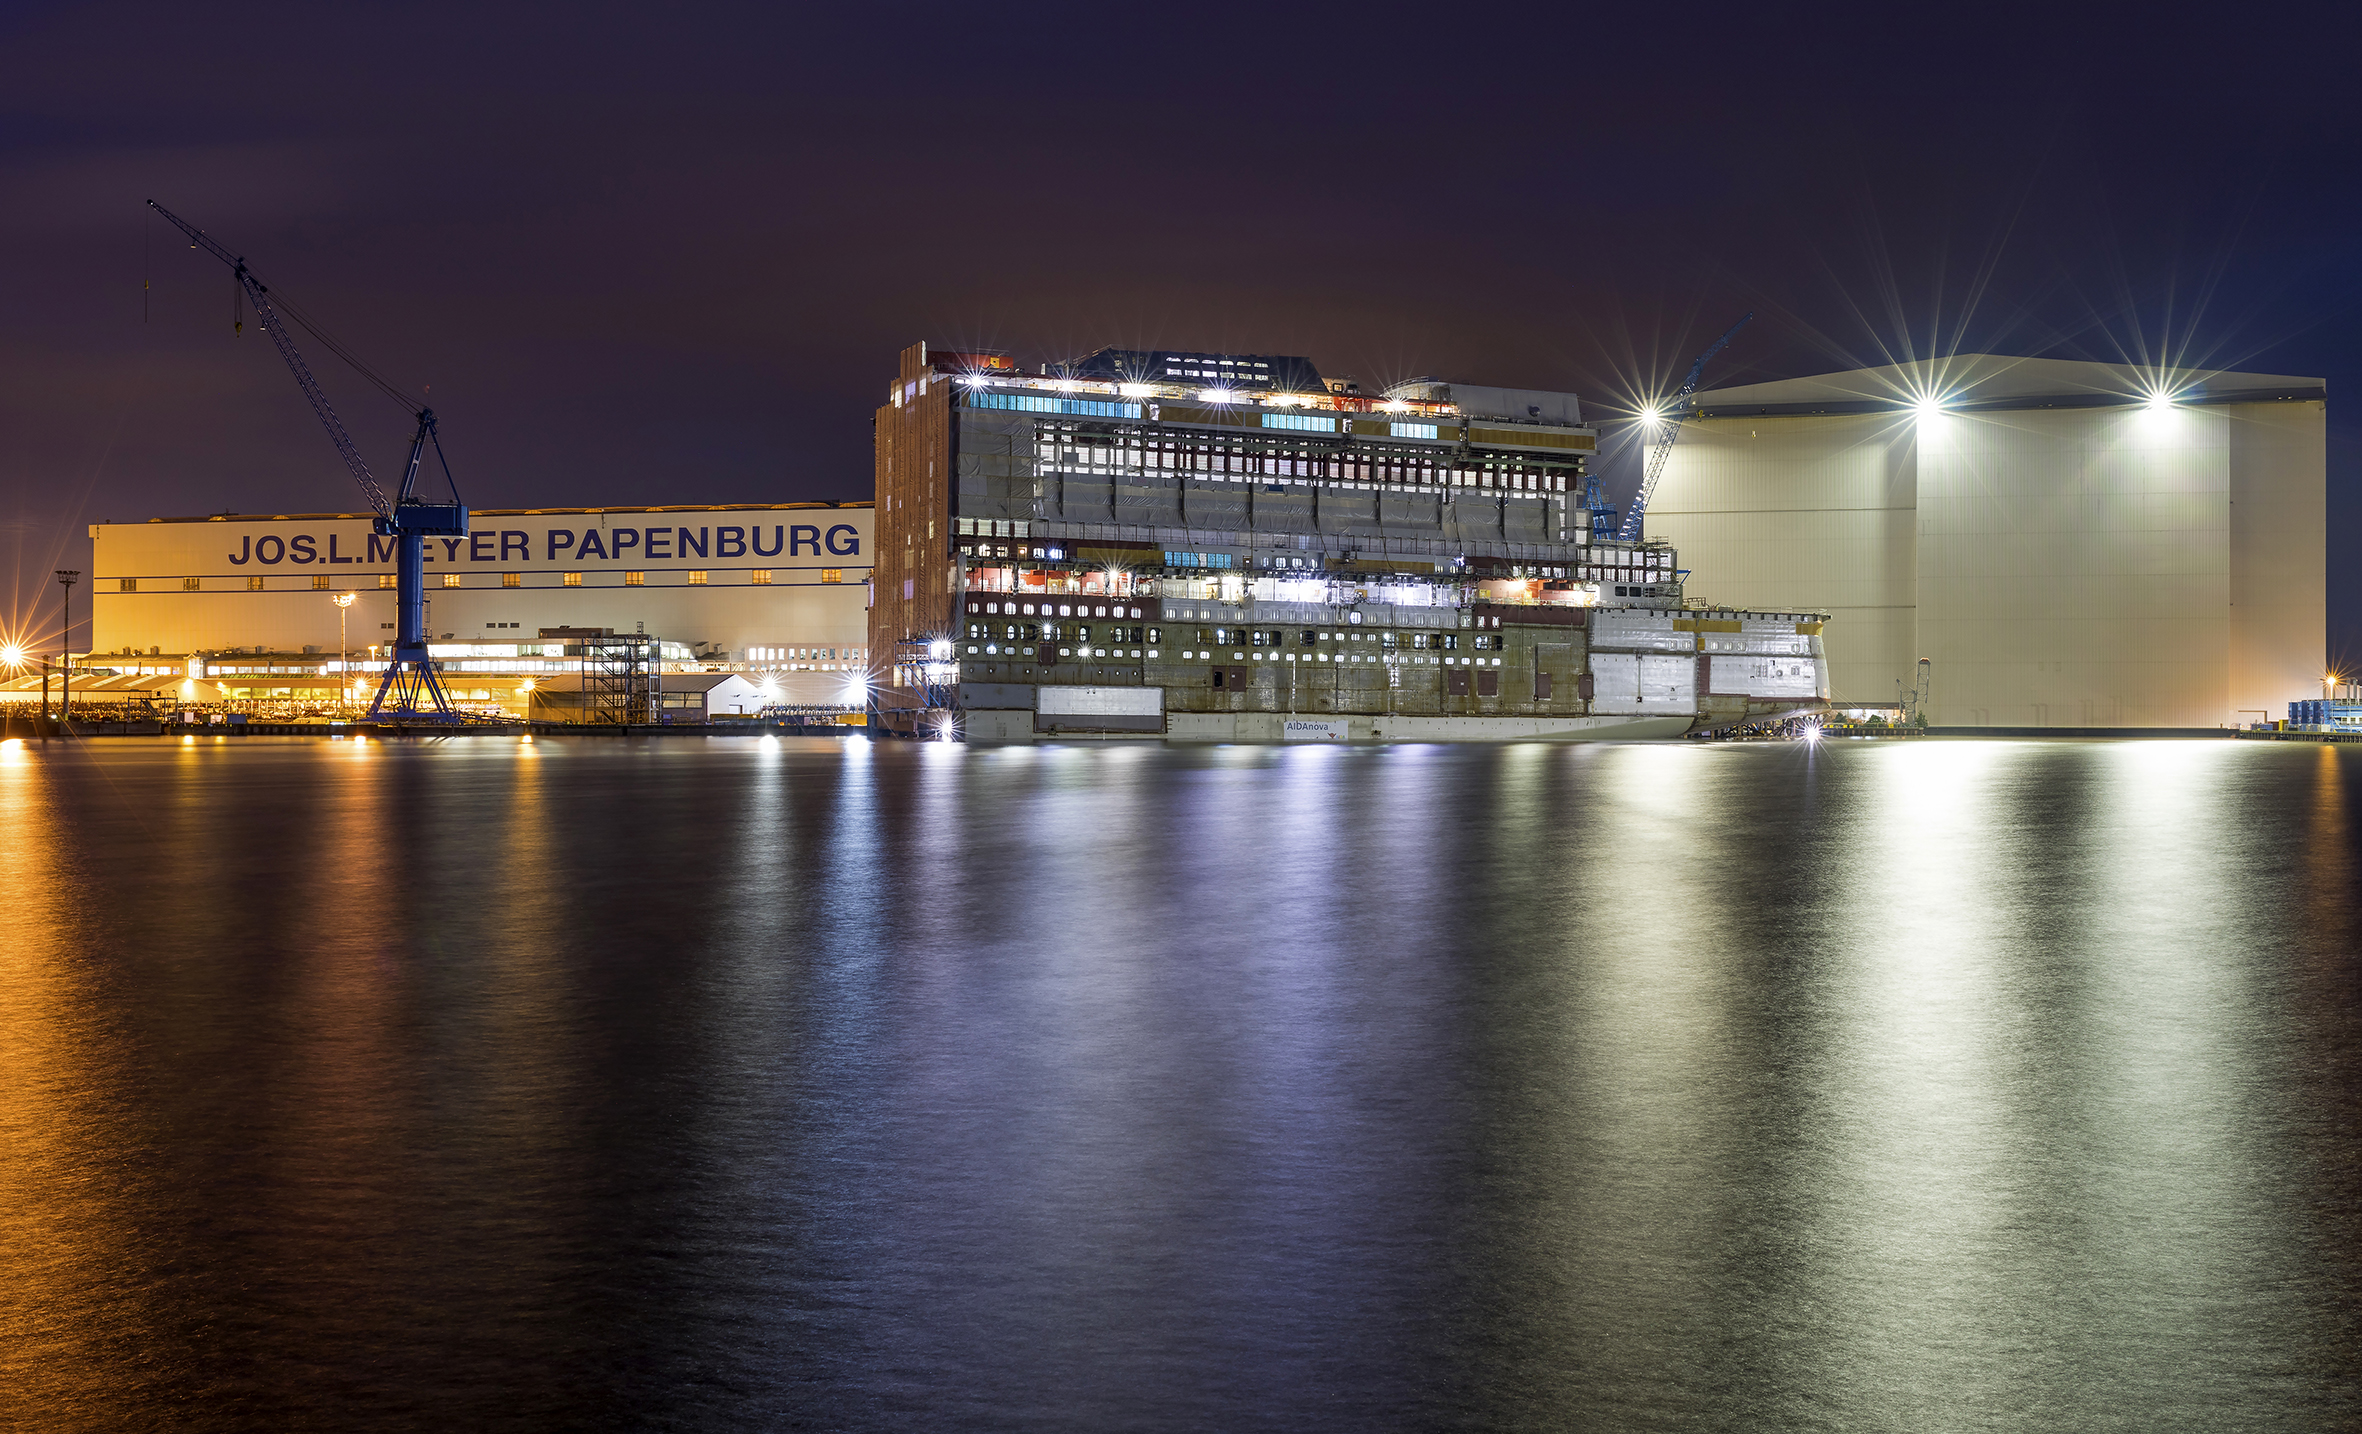 Bereits zum zweiten Mal in einem Monat hat ein halbfertiges Schiff in der Meyer-Werft in Papenburg gebrannt, diesmal auf Deck 2 der "Odyssey of the Seas"